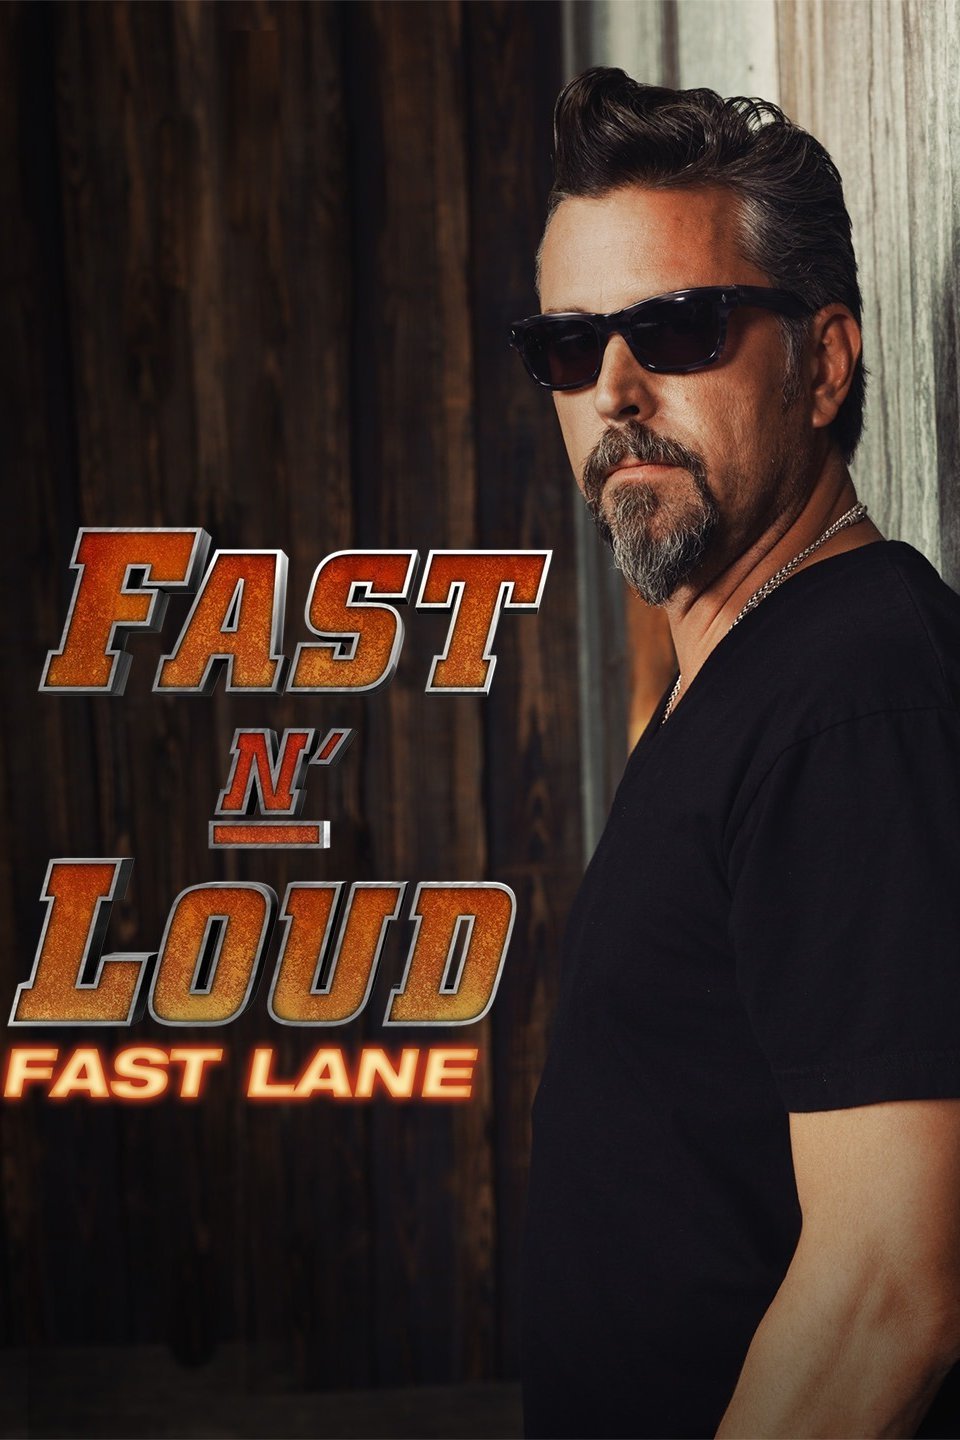 Hard fast loud best ways